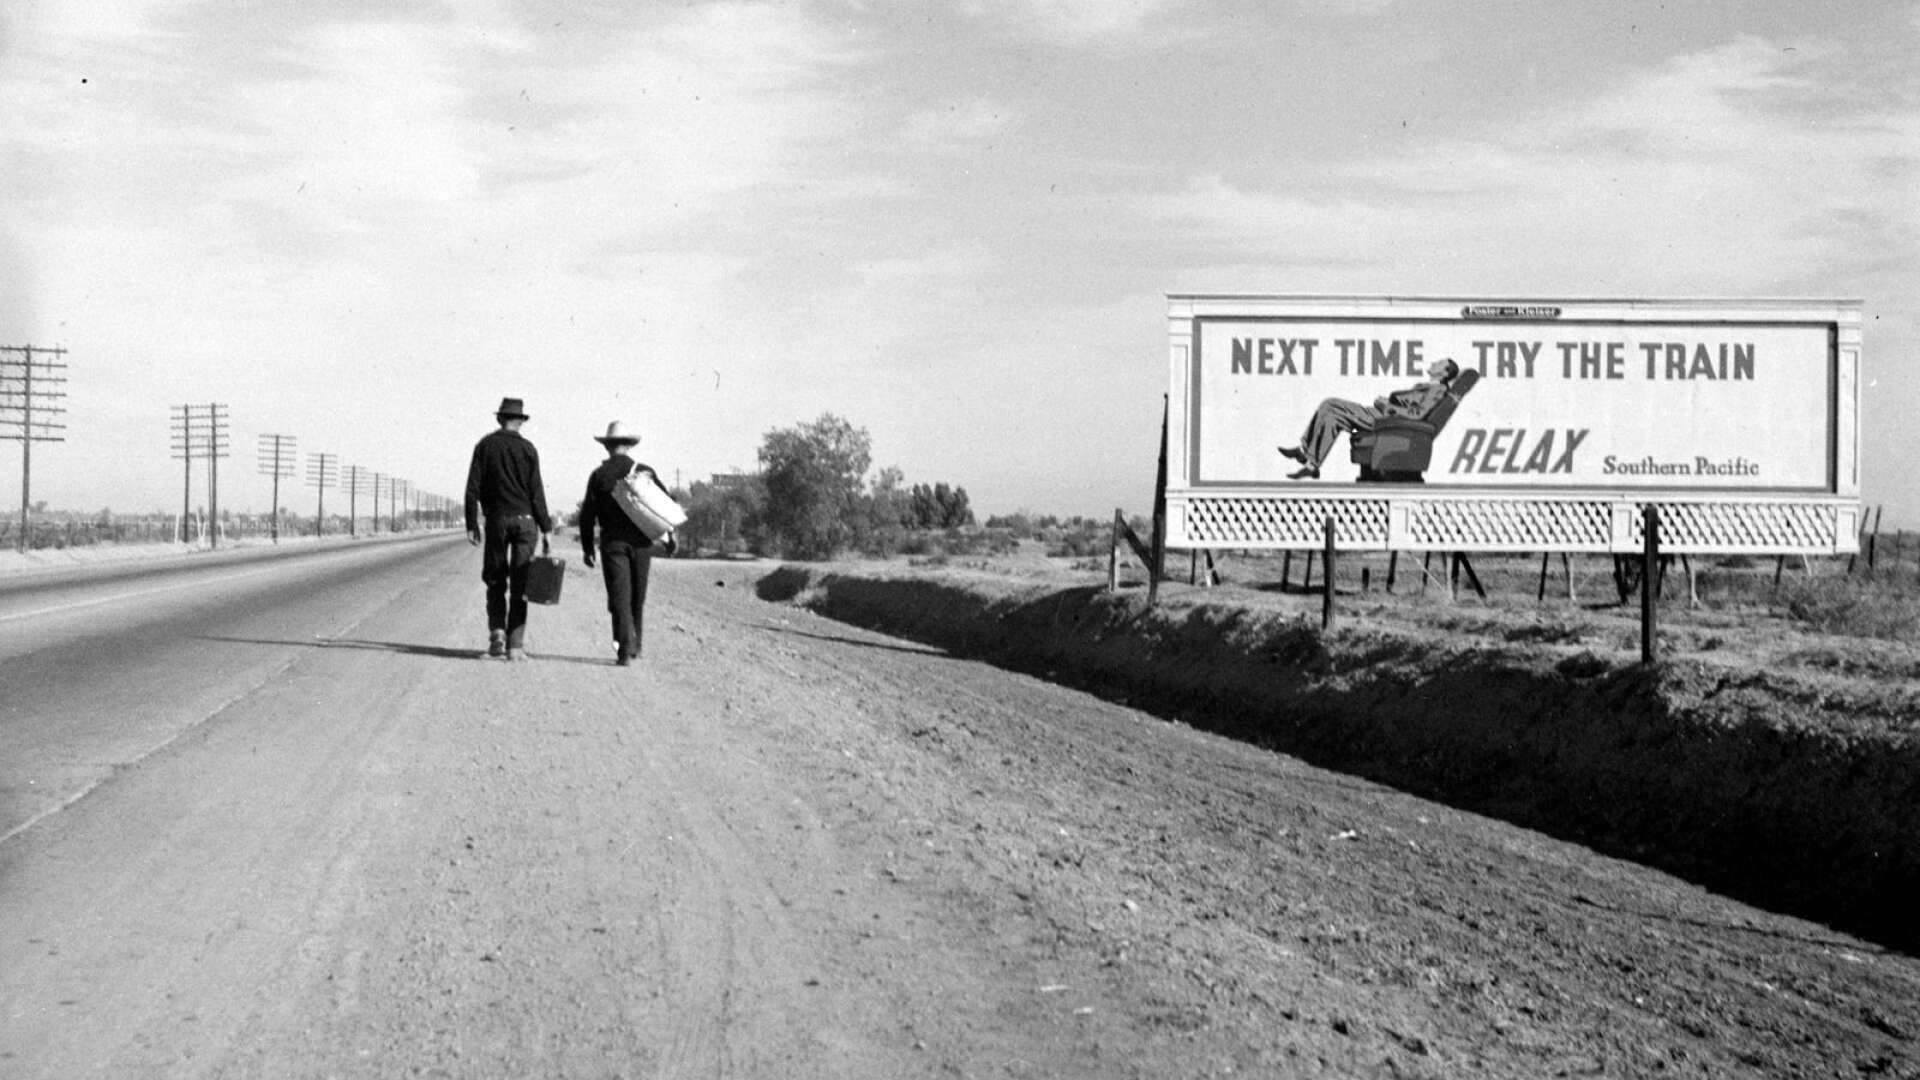 Toward Los Angeles, California. 1937. Fotografen Dorothea Lange reste på 30-talet runt på landsbygden i USA. Hennes bilder visas i höst på en utställning i Karlstad. (Bilden är beskuren.)